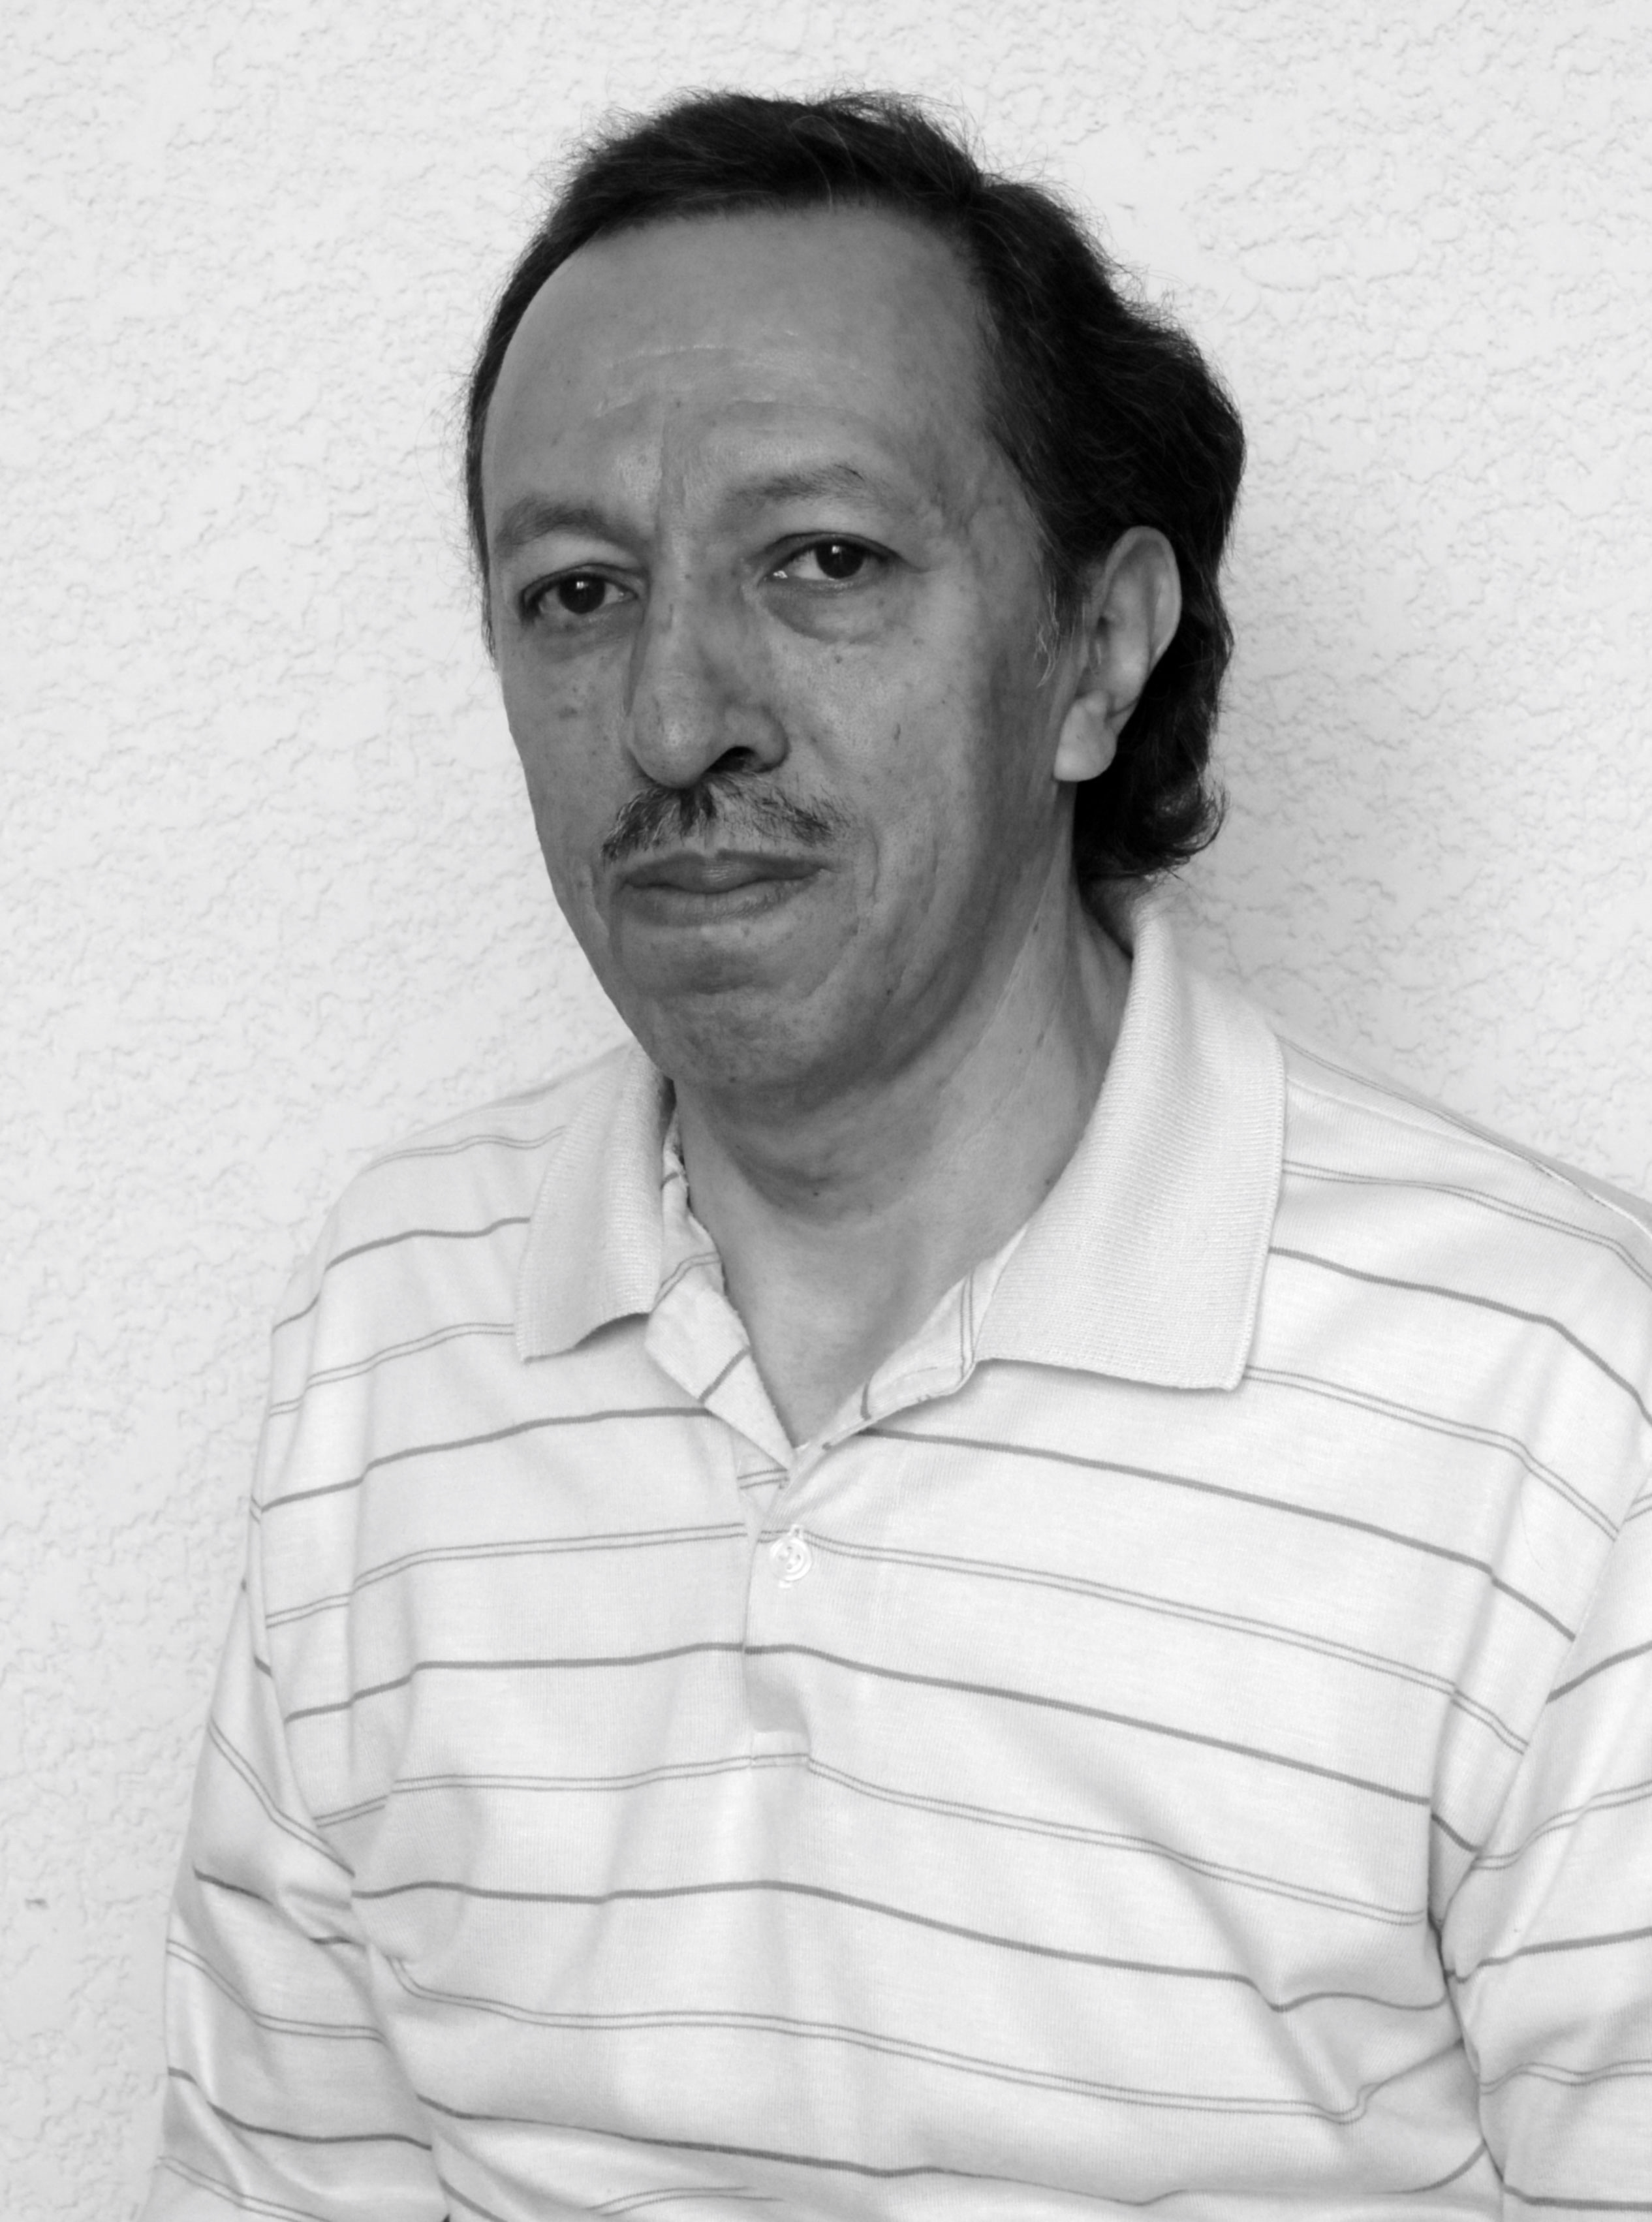 Carlos Salvador Paredes Martínez